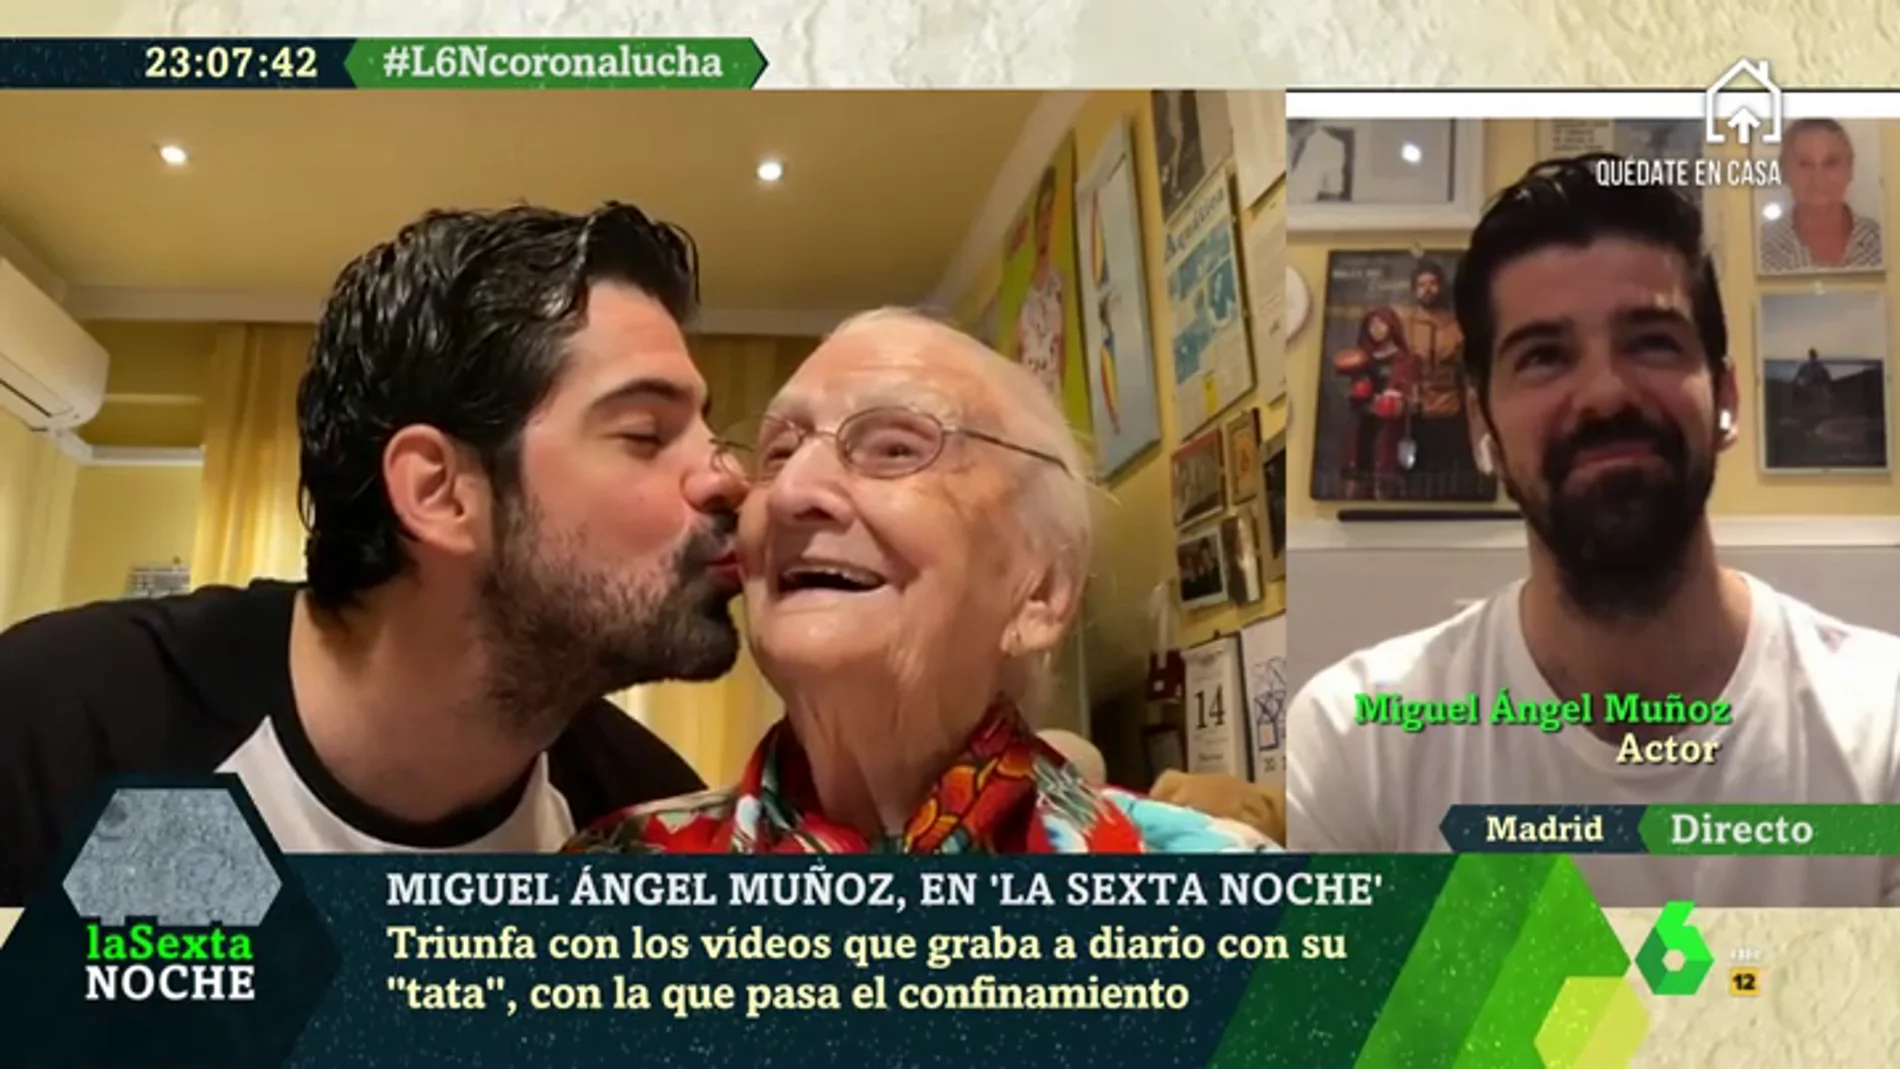 Así está viviendo el confinamiento Miguel Ángel Muñoz junto a su 'tata' de 95 años: "Está siendo una etapa maravillosa"